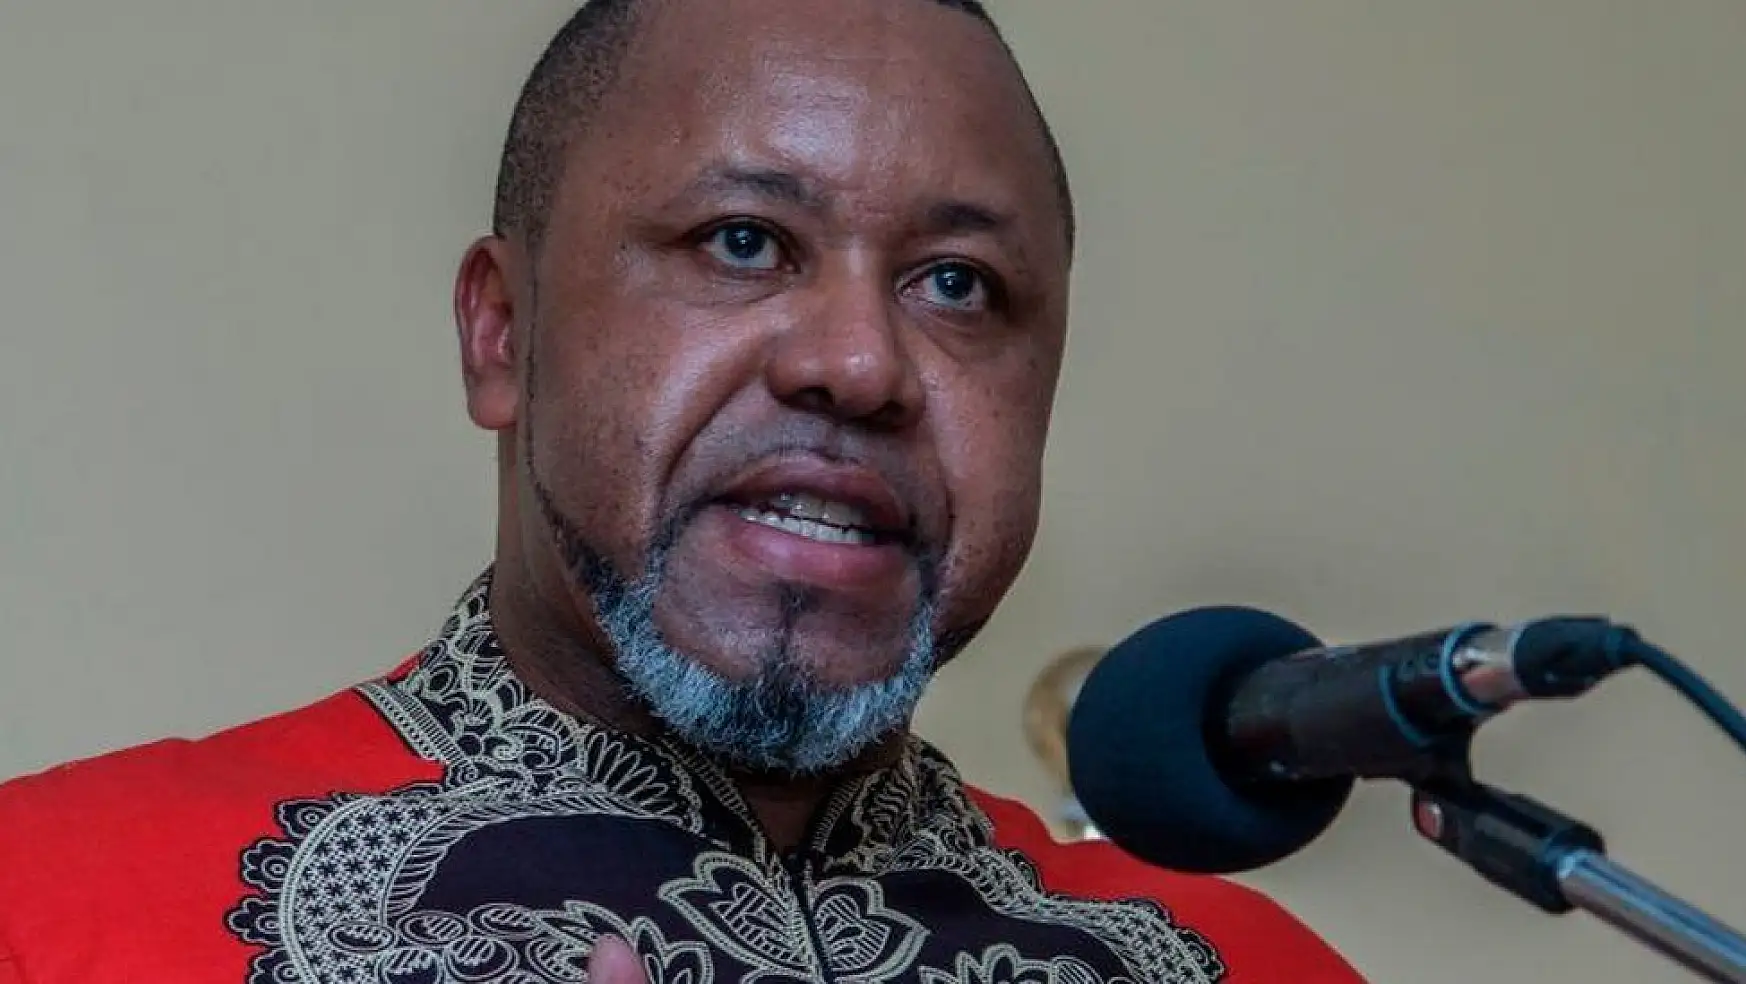 Güney Afrika ülkesi Malavi'nin Devlet Başkanı Yardımcısı, yolsuzluk suçlamasıyla gözaltına alındı